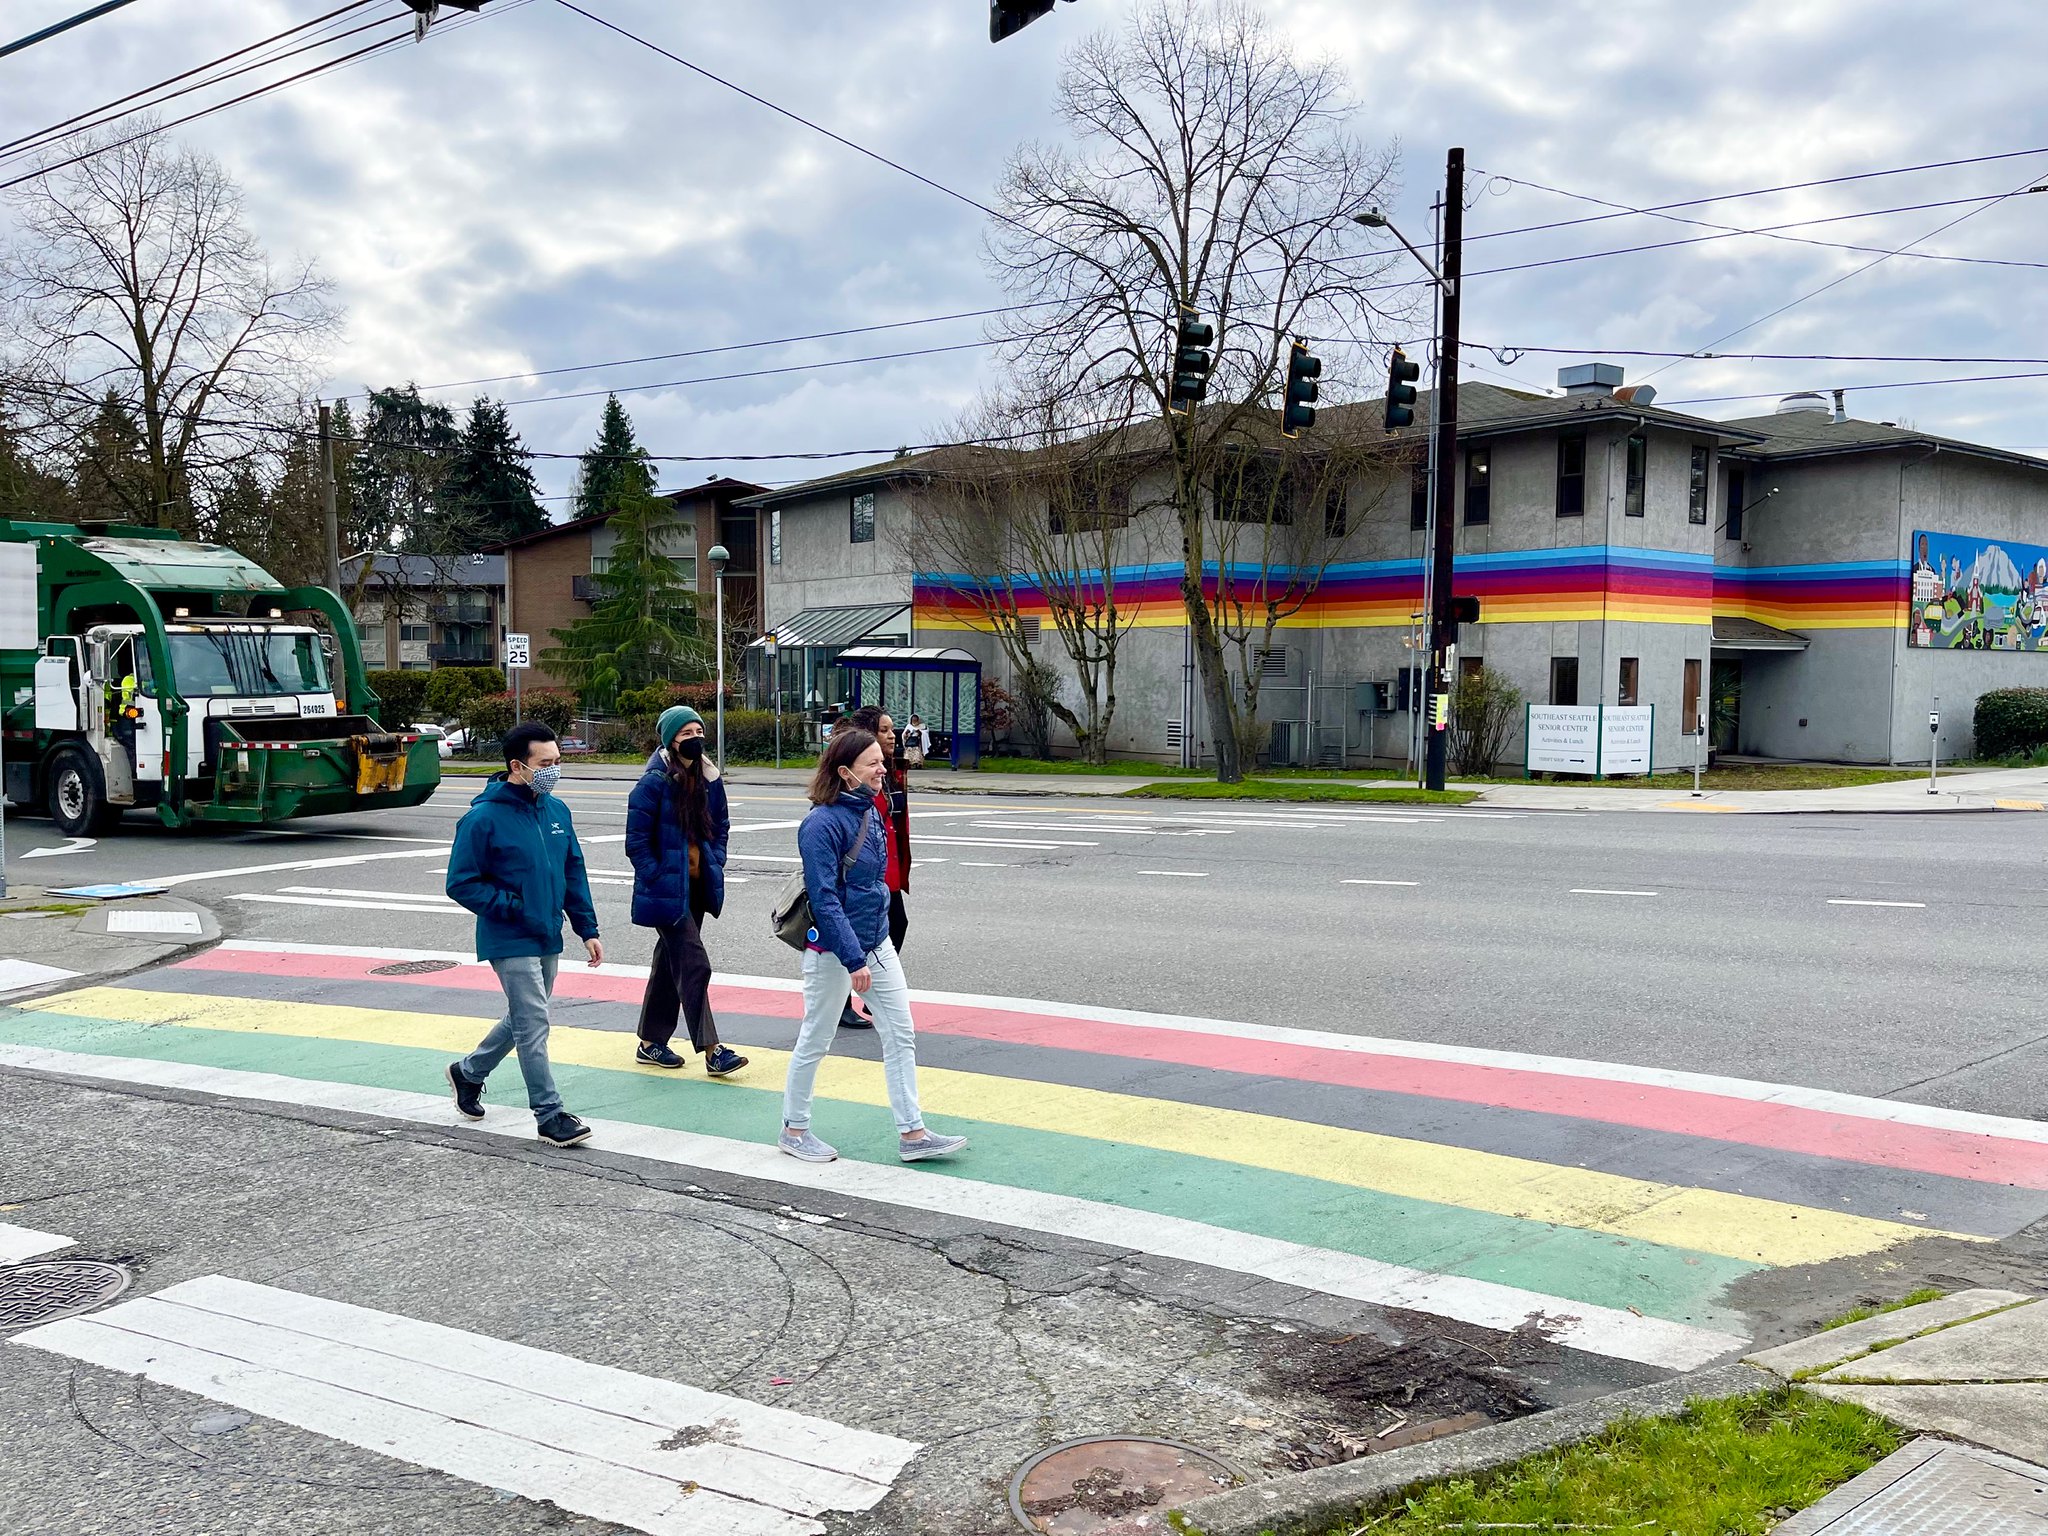 Cải thiện giao thông vận tải tại Rainier, Seattle: Hãy được ngắm nhìn những hoạt động cải thiện giao thông vận tải tại Rainier, Seattle. Với những dự án mới về đường và cầu, bạn sẽ cảm thấy an tâm khi di chuyển đi làm mỗi ngày. Hãy xem hình ảnh để cảm nhận sự khác biệt!